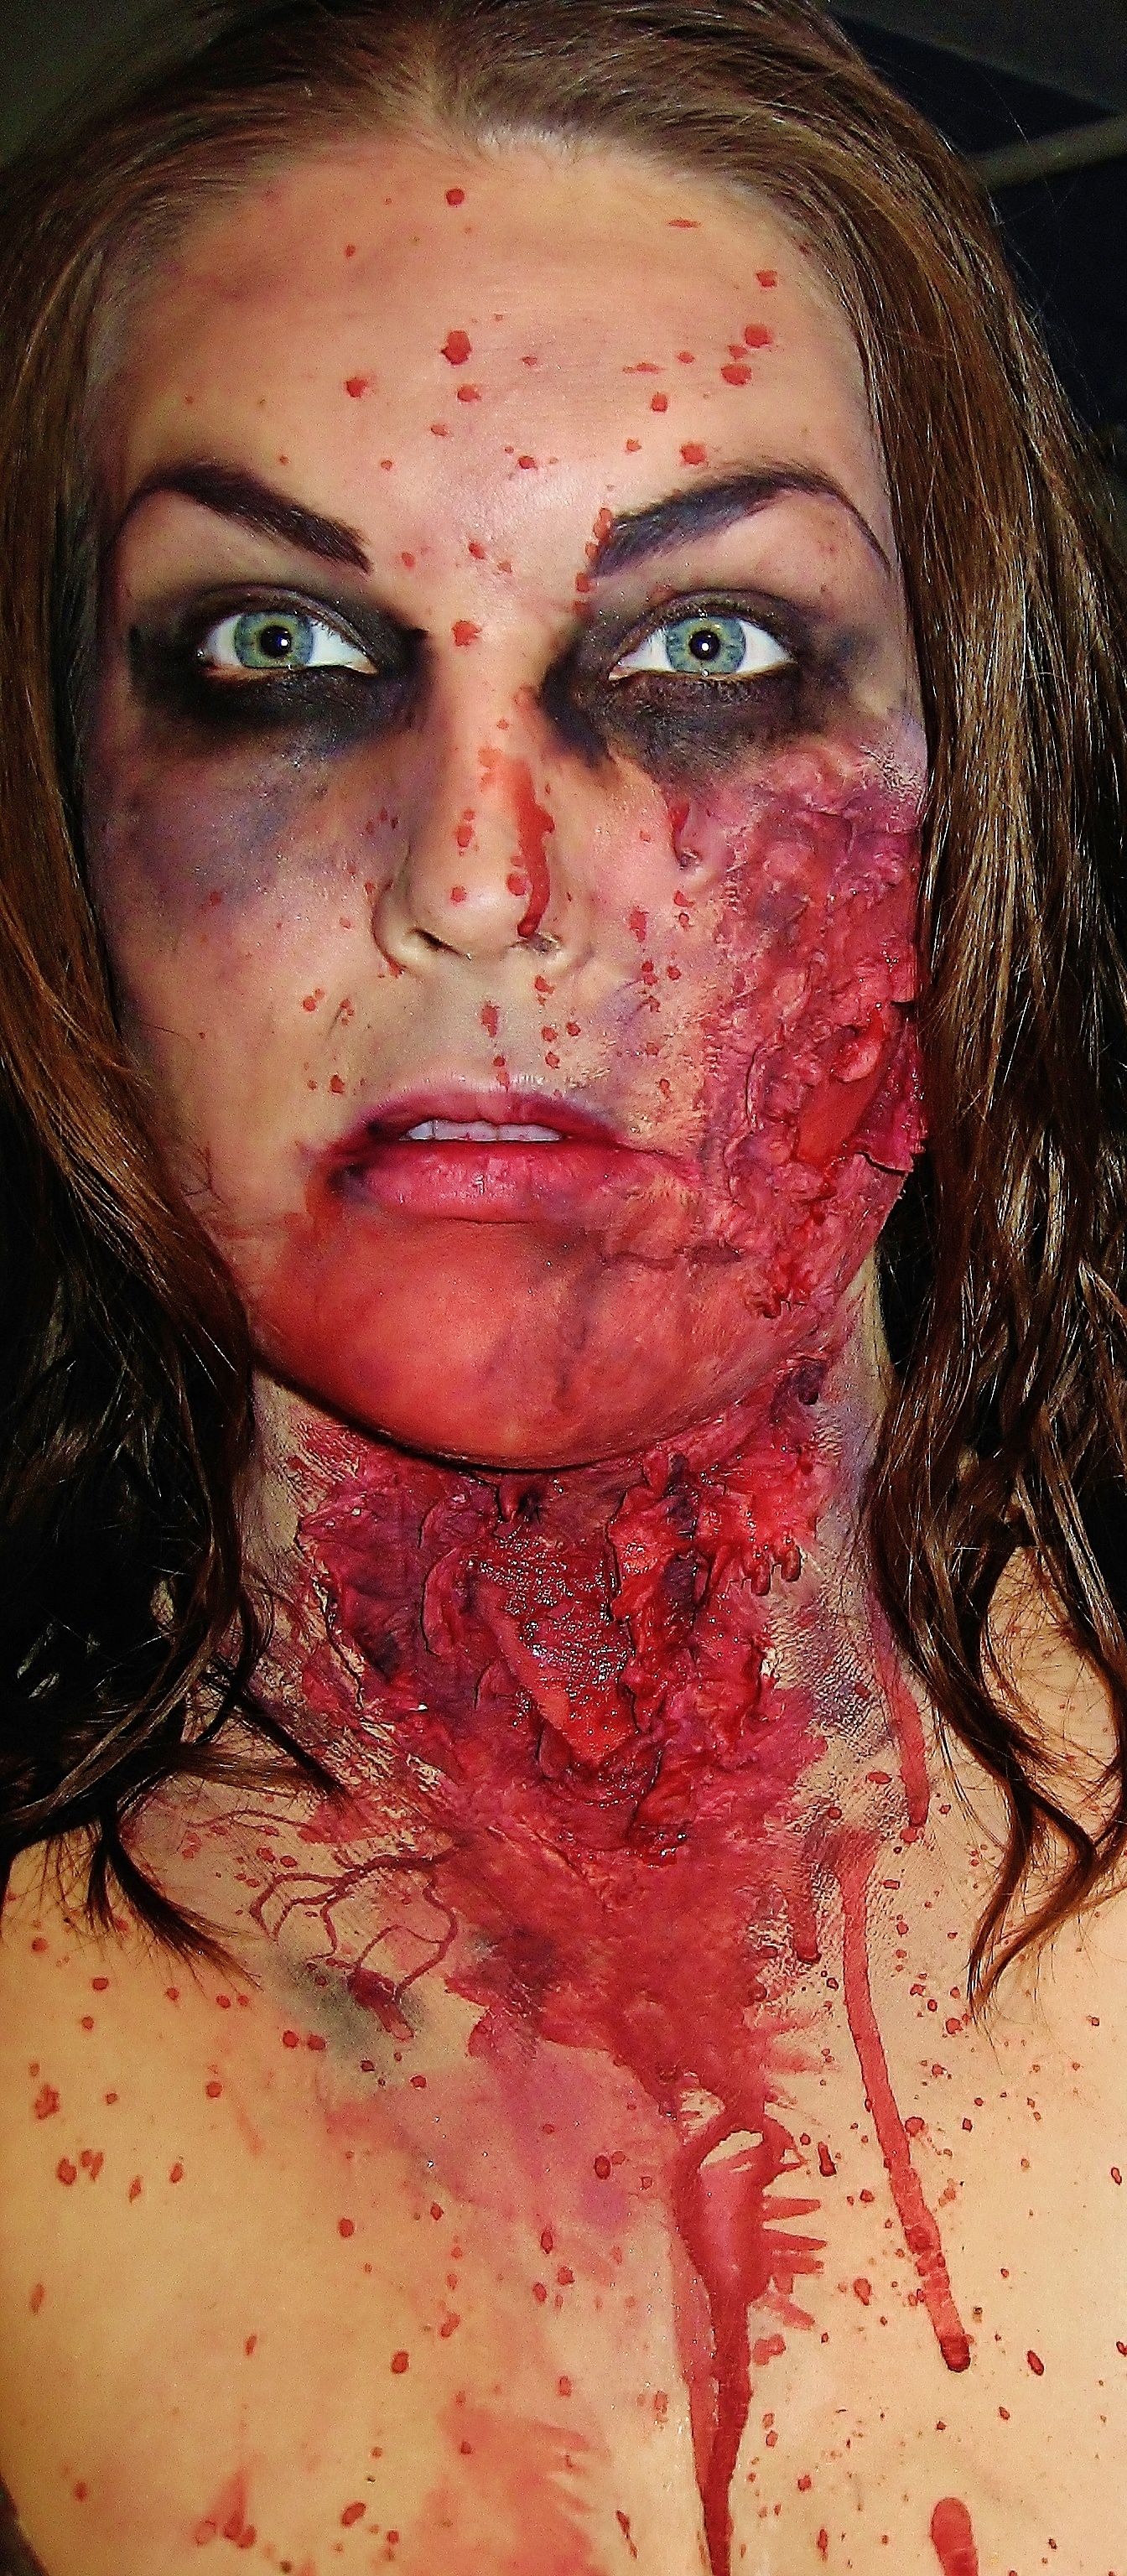 simple kid zombie liquid latex face makeup ideas